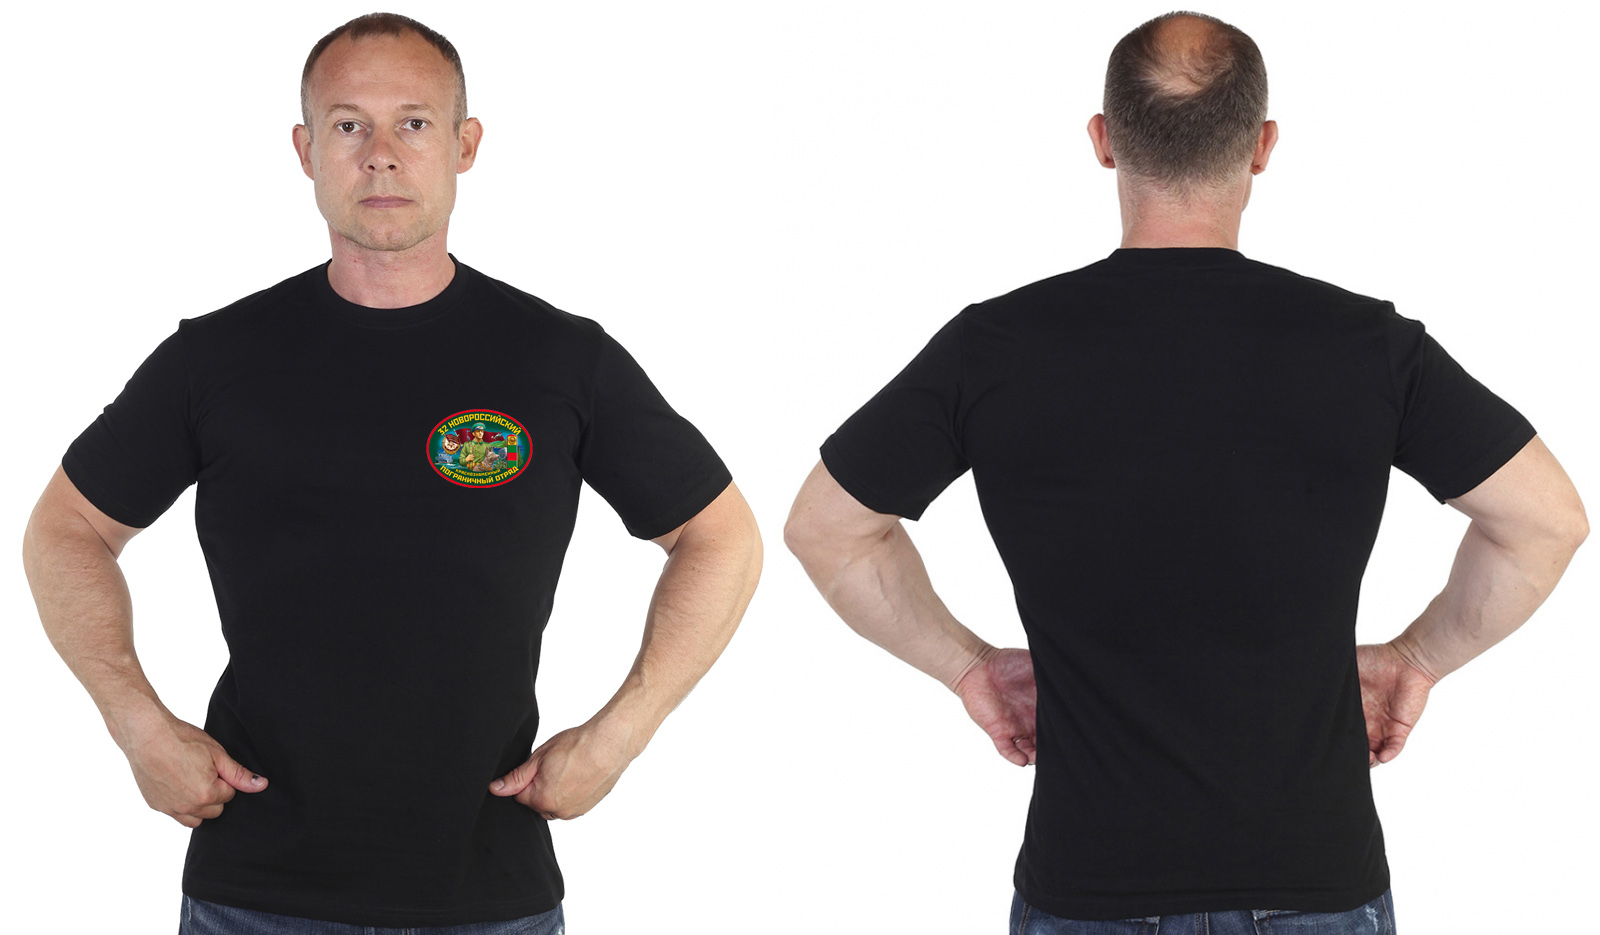 Чёрная футболка "32 Новороссийского пограничного отряда" 